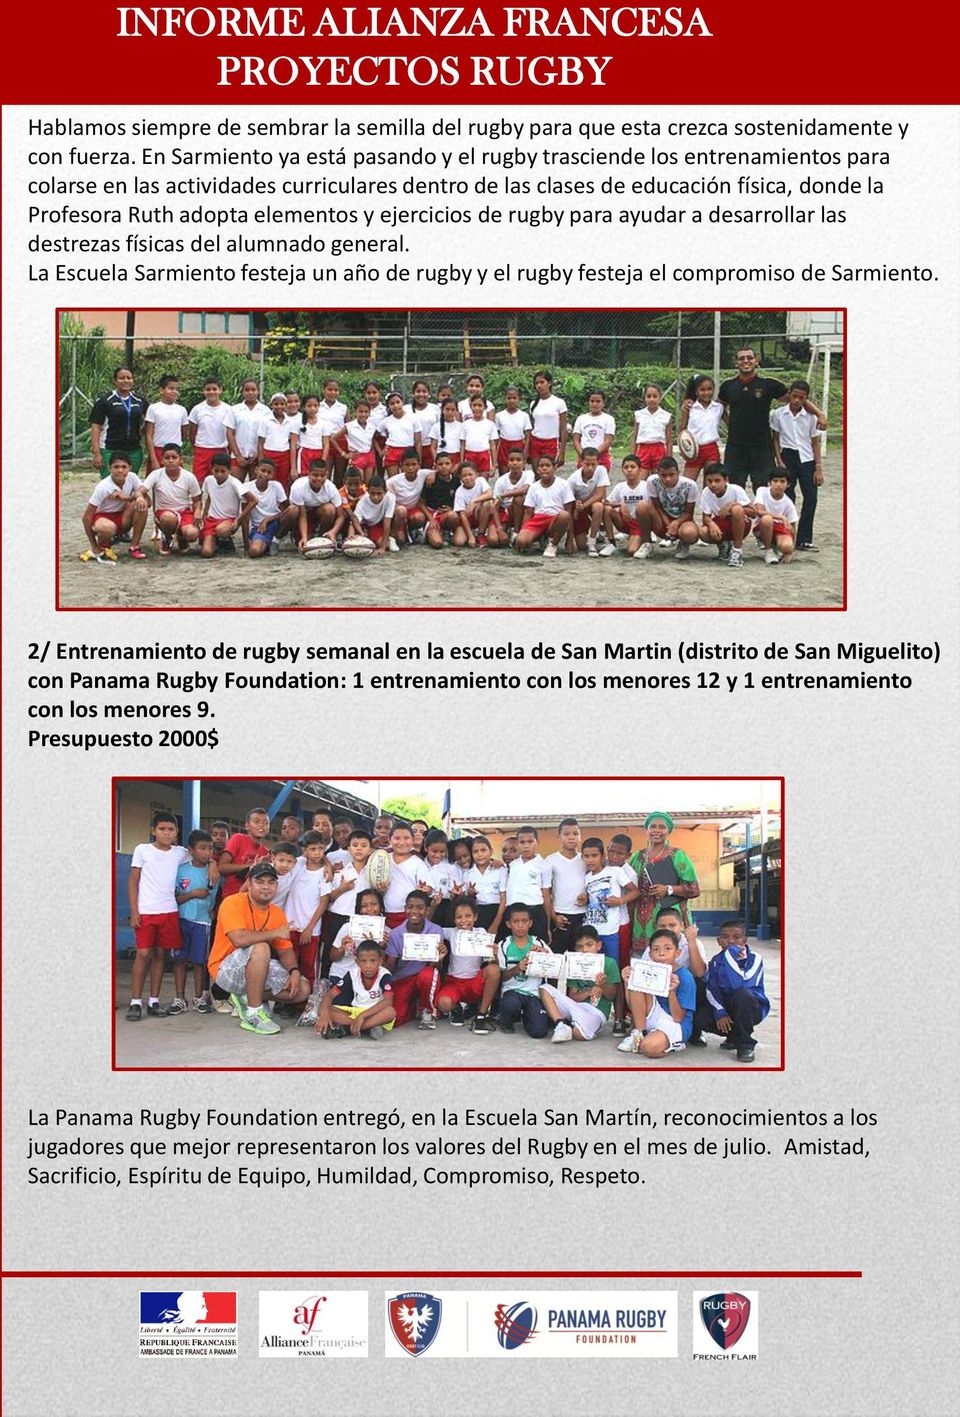 ejercicios de rugby para ayudar a desarrollar las destrezas físicas del alumnado general. La Escuela Sarmiento festeja un año de rugby y el rugby festeja el compromiso de Sarmiento.